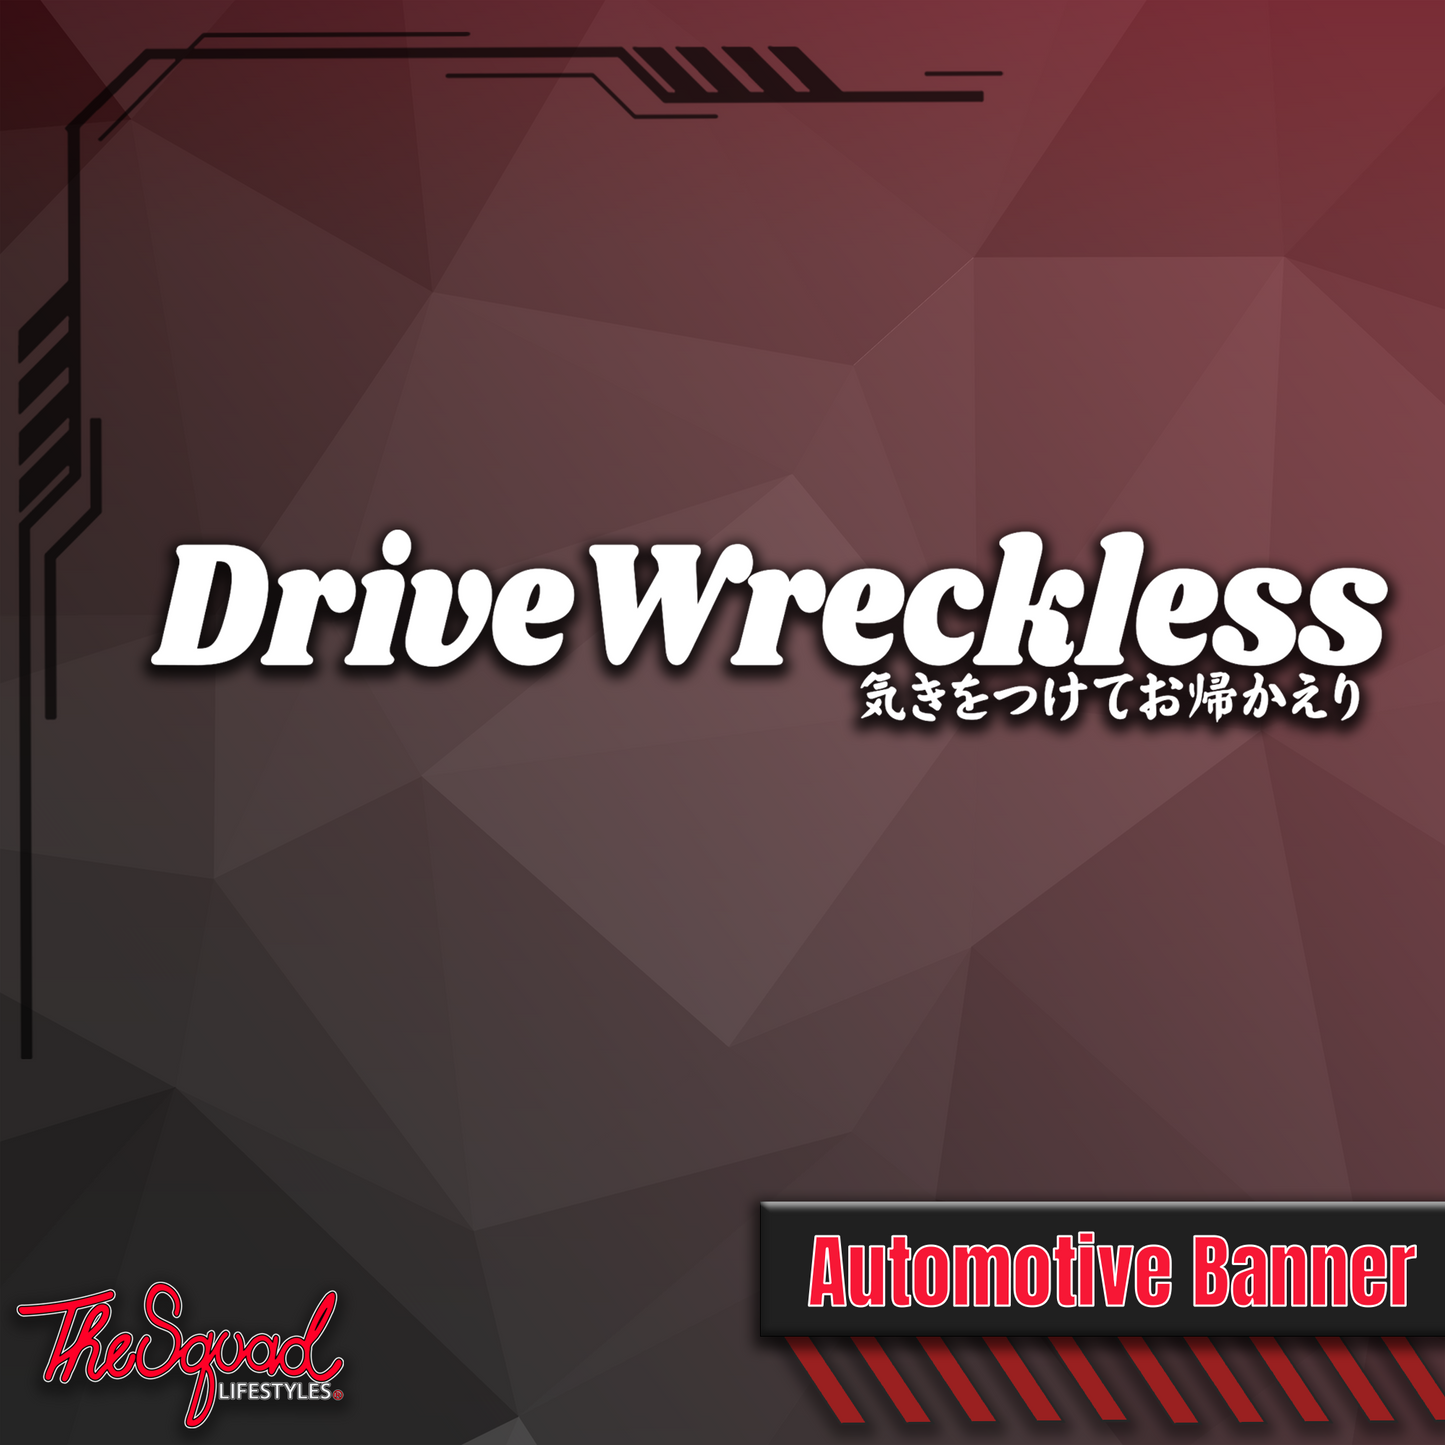 Drive Wreckless Banner Sticker